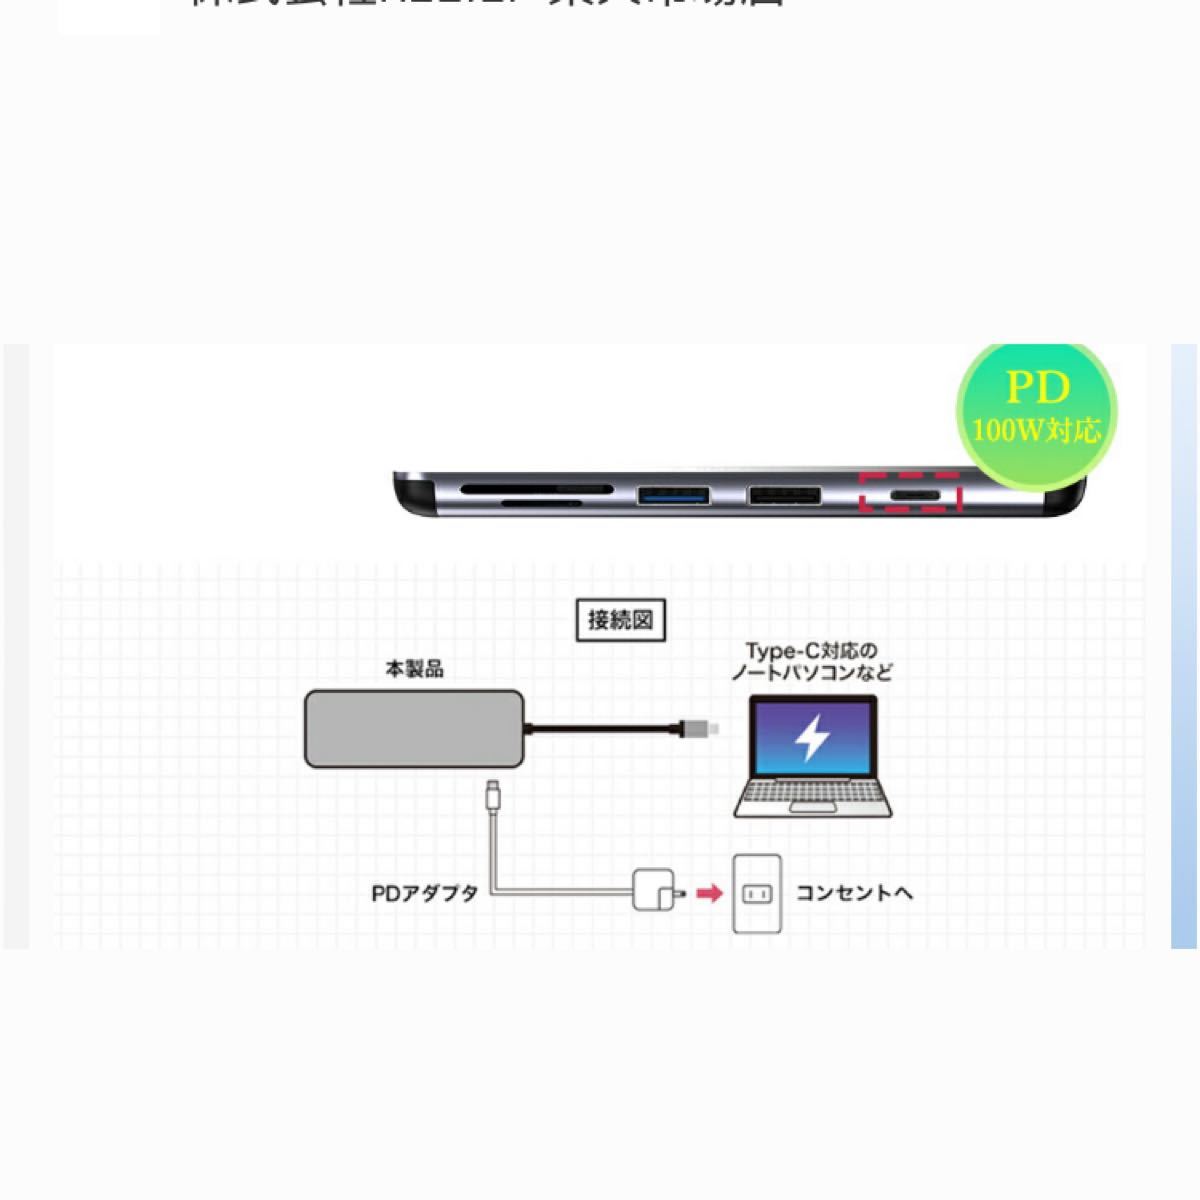 Type-C ハブ (7ポート）USB ドッキング ハブ HDMI 4K PD急速充電 USB3.0ポート カードリーダー 